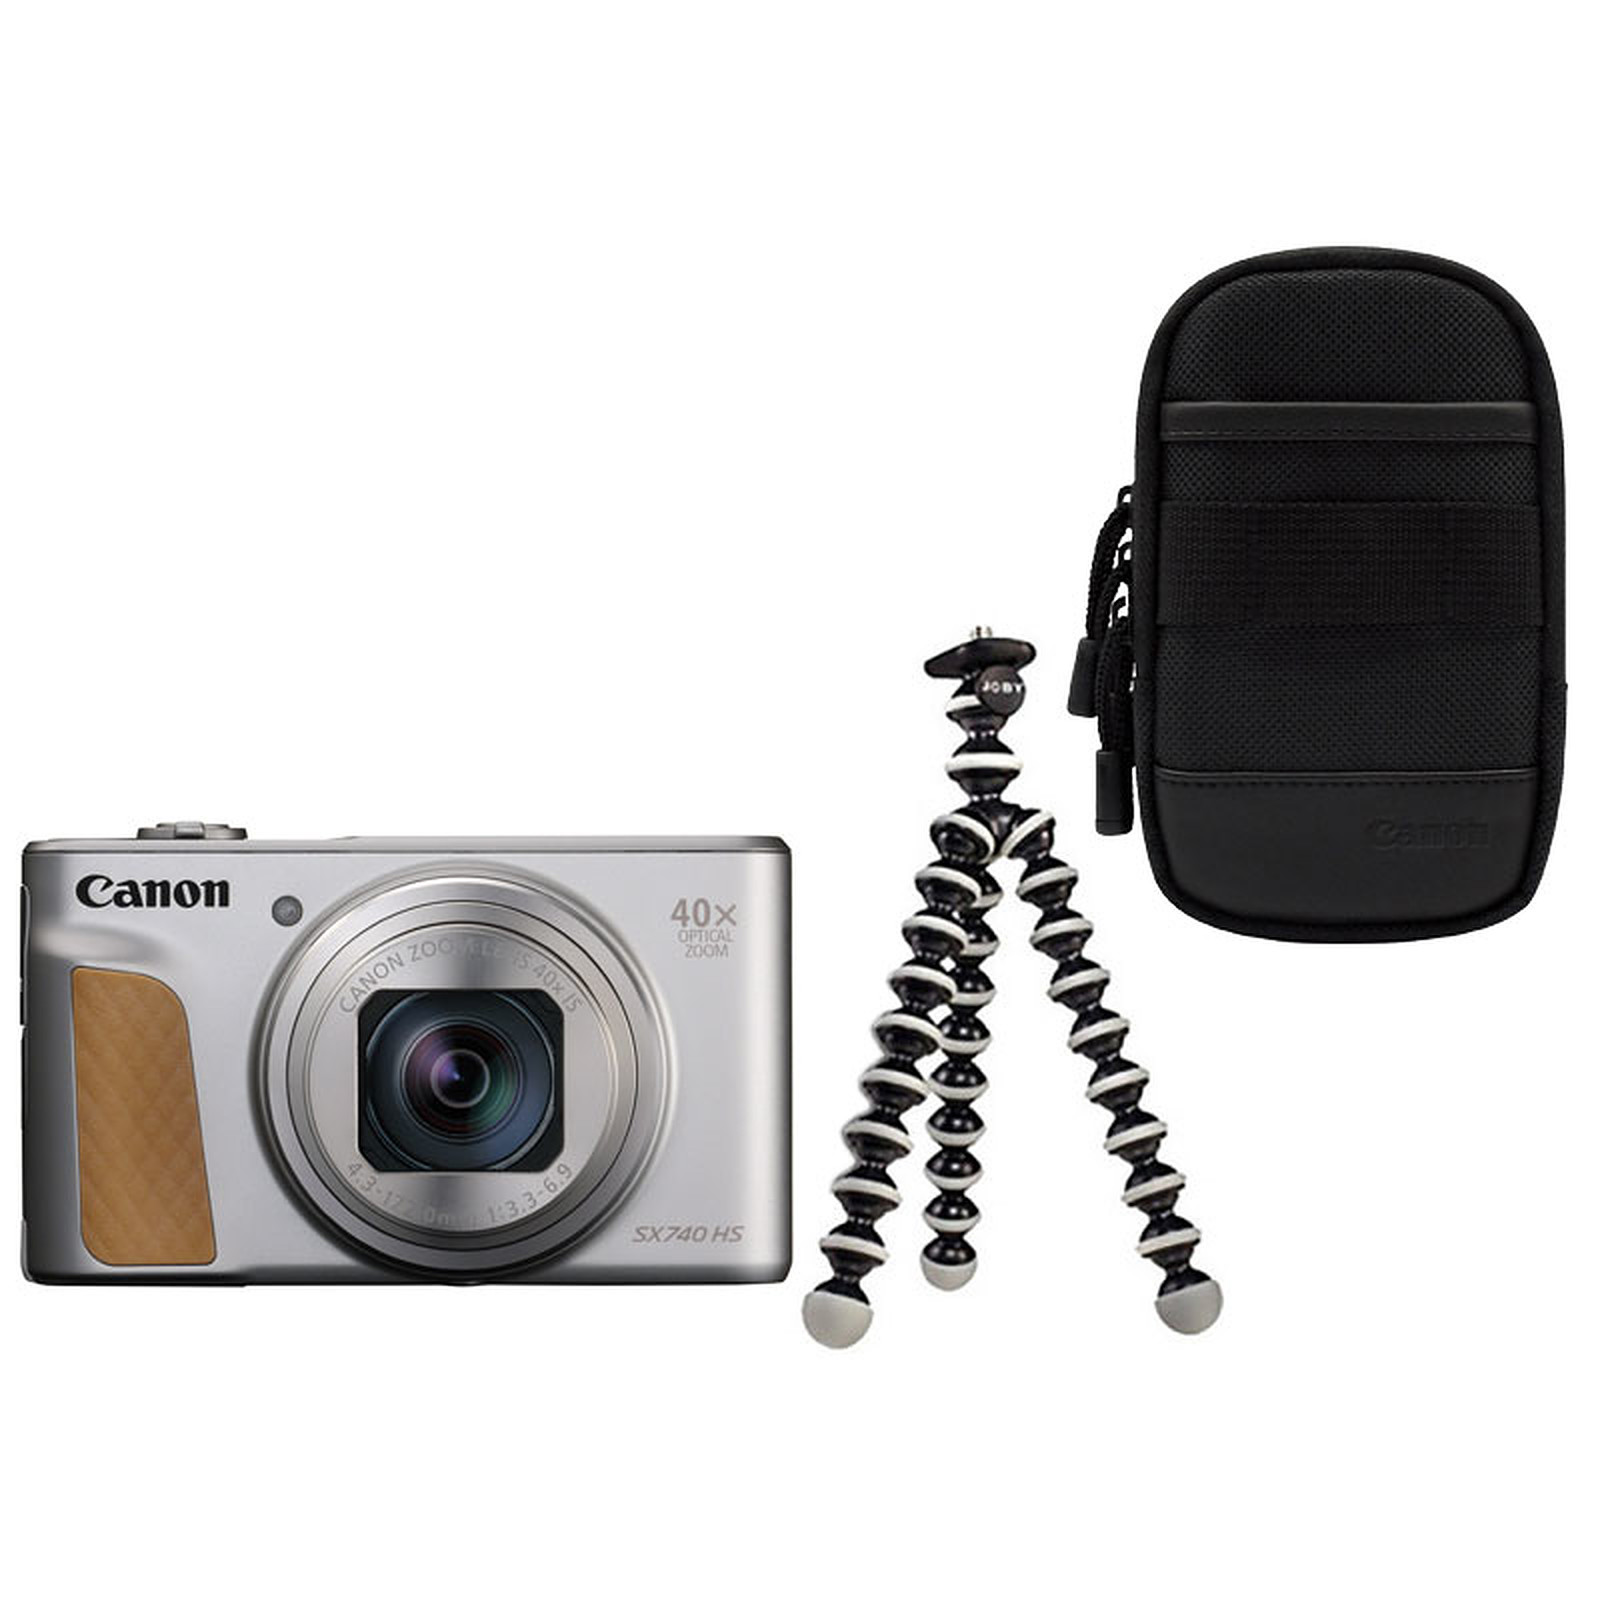 Canon PowerShot SX740 HS Argent + Etui + Gorillapod - Appareil photo numerique Canon - Occasion